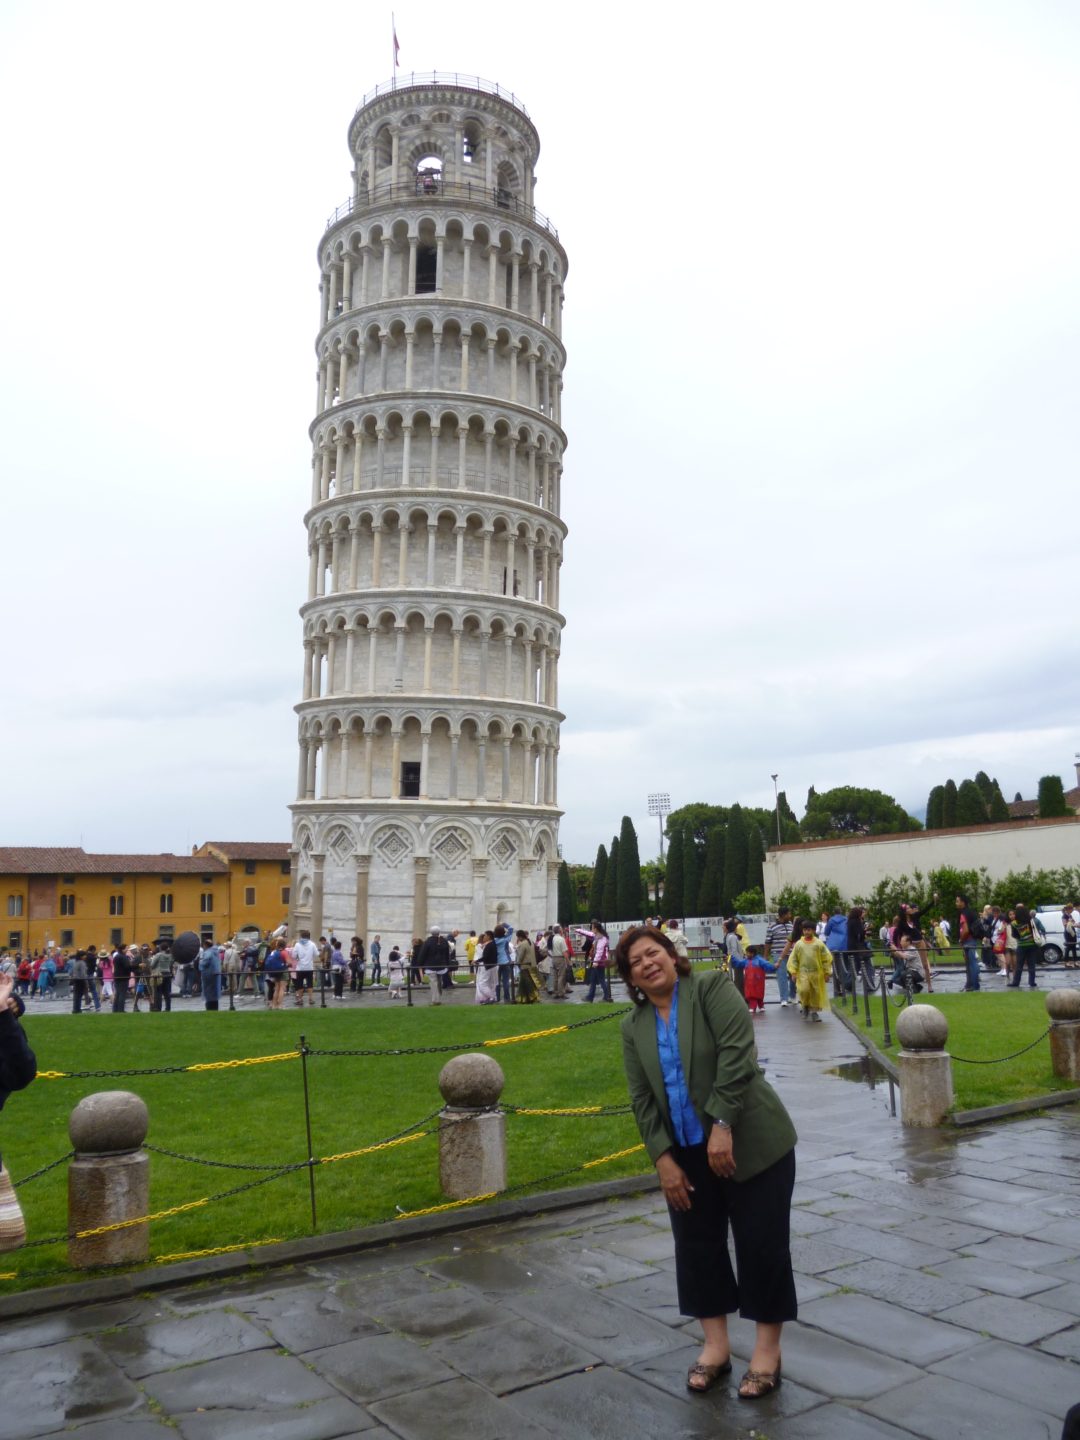 Torre de Pisa siempre asombra por su inclinación